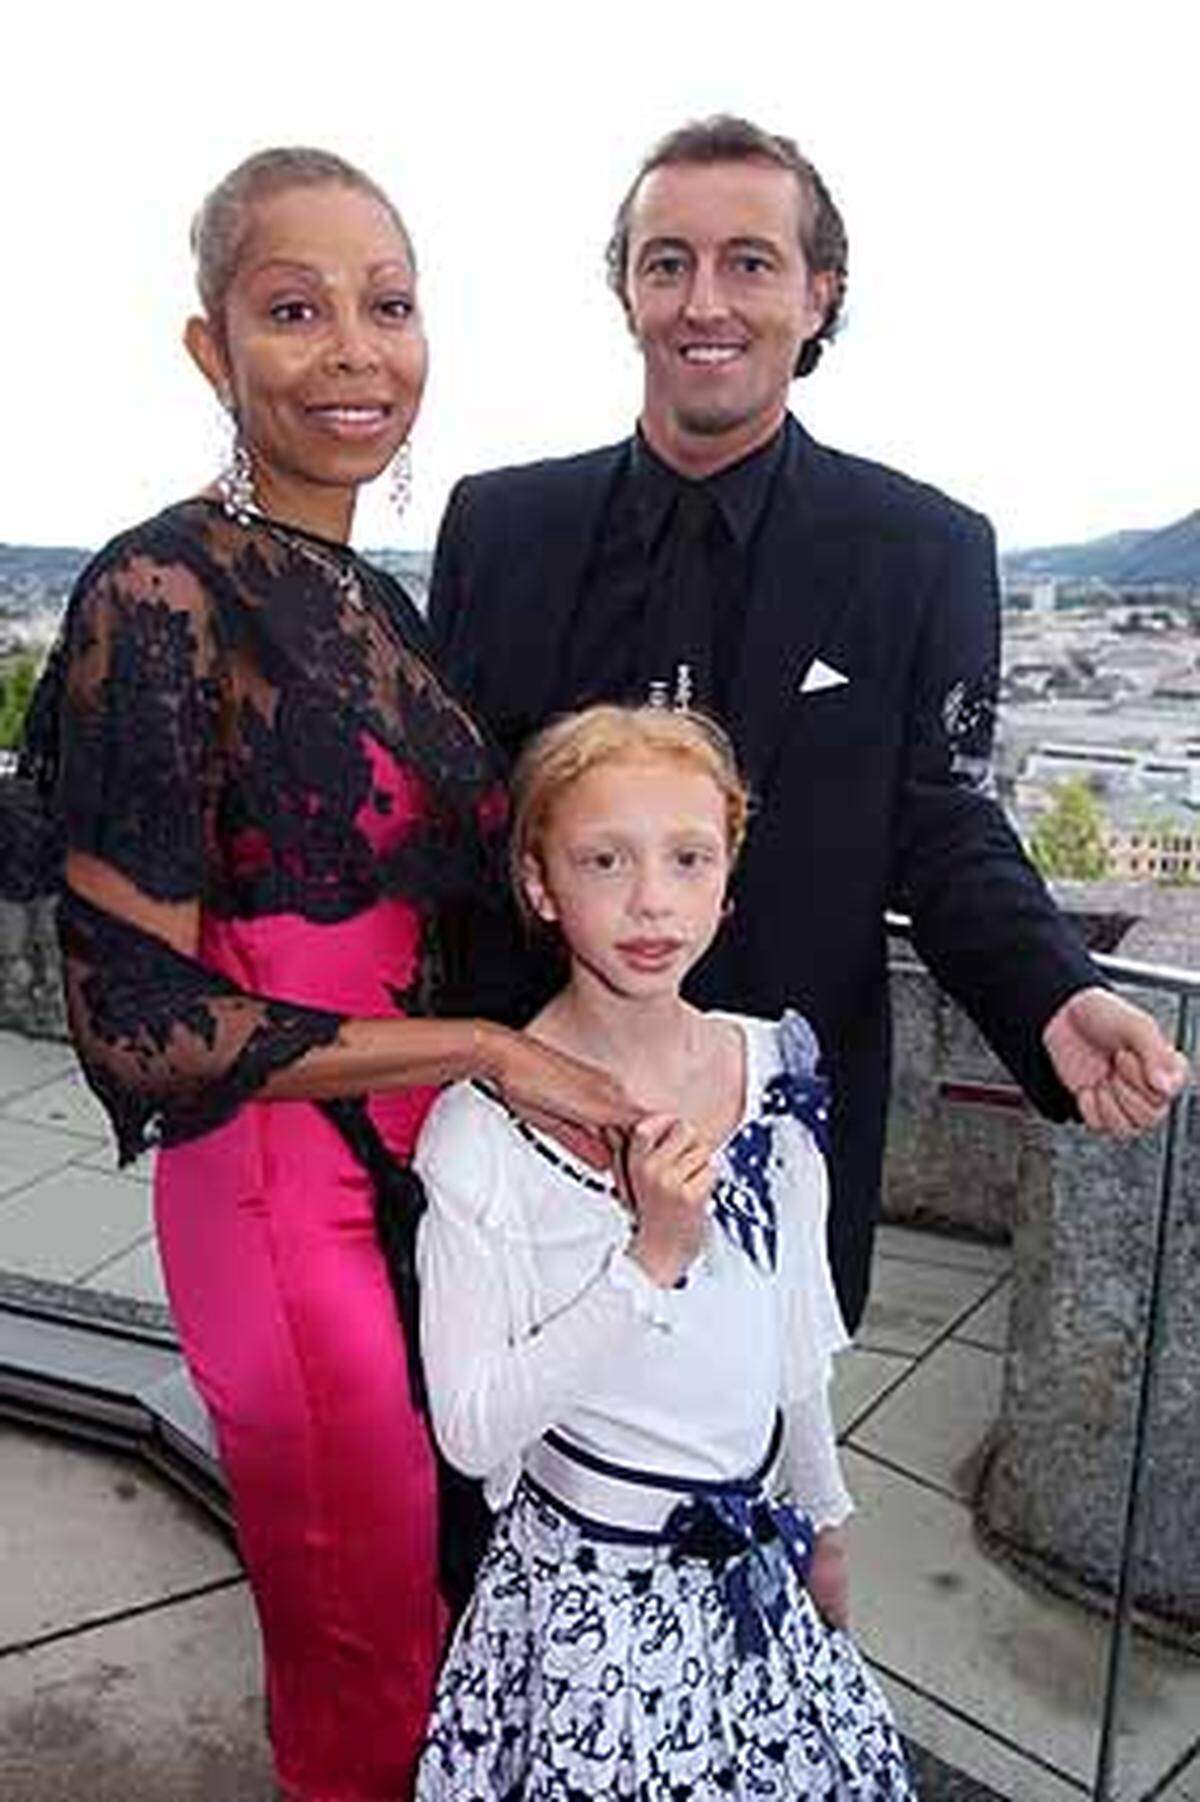 Mario-Max Schaumburg-Lippe posiert mit Anna Ermakova, der unehelichen Tochter des ehemaligen Tennis-Stars Boris Becker, und ihrer Mutter Angela.